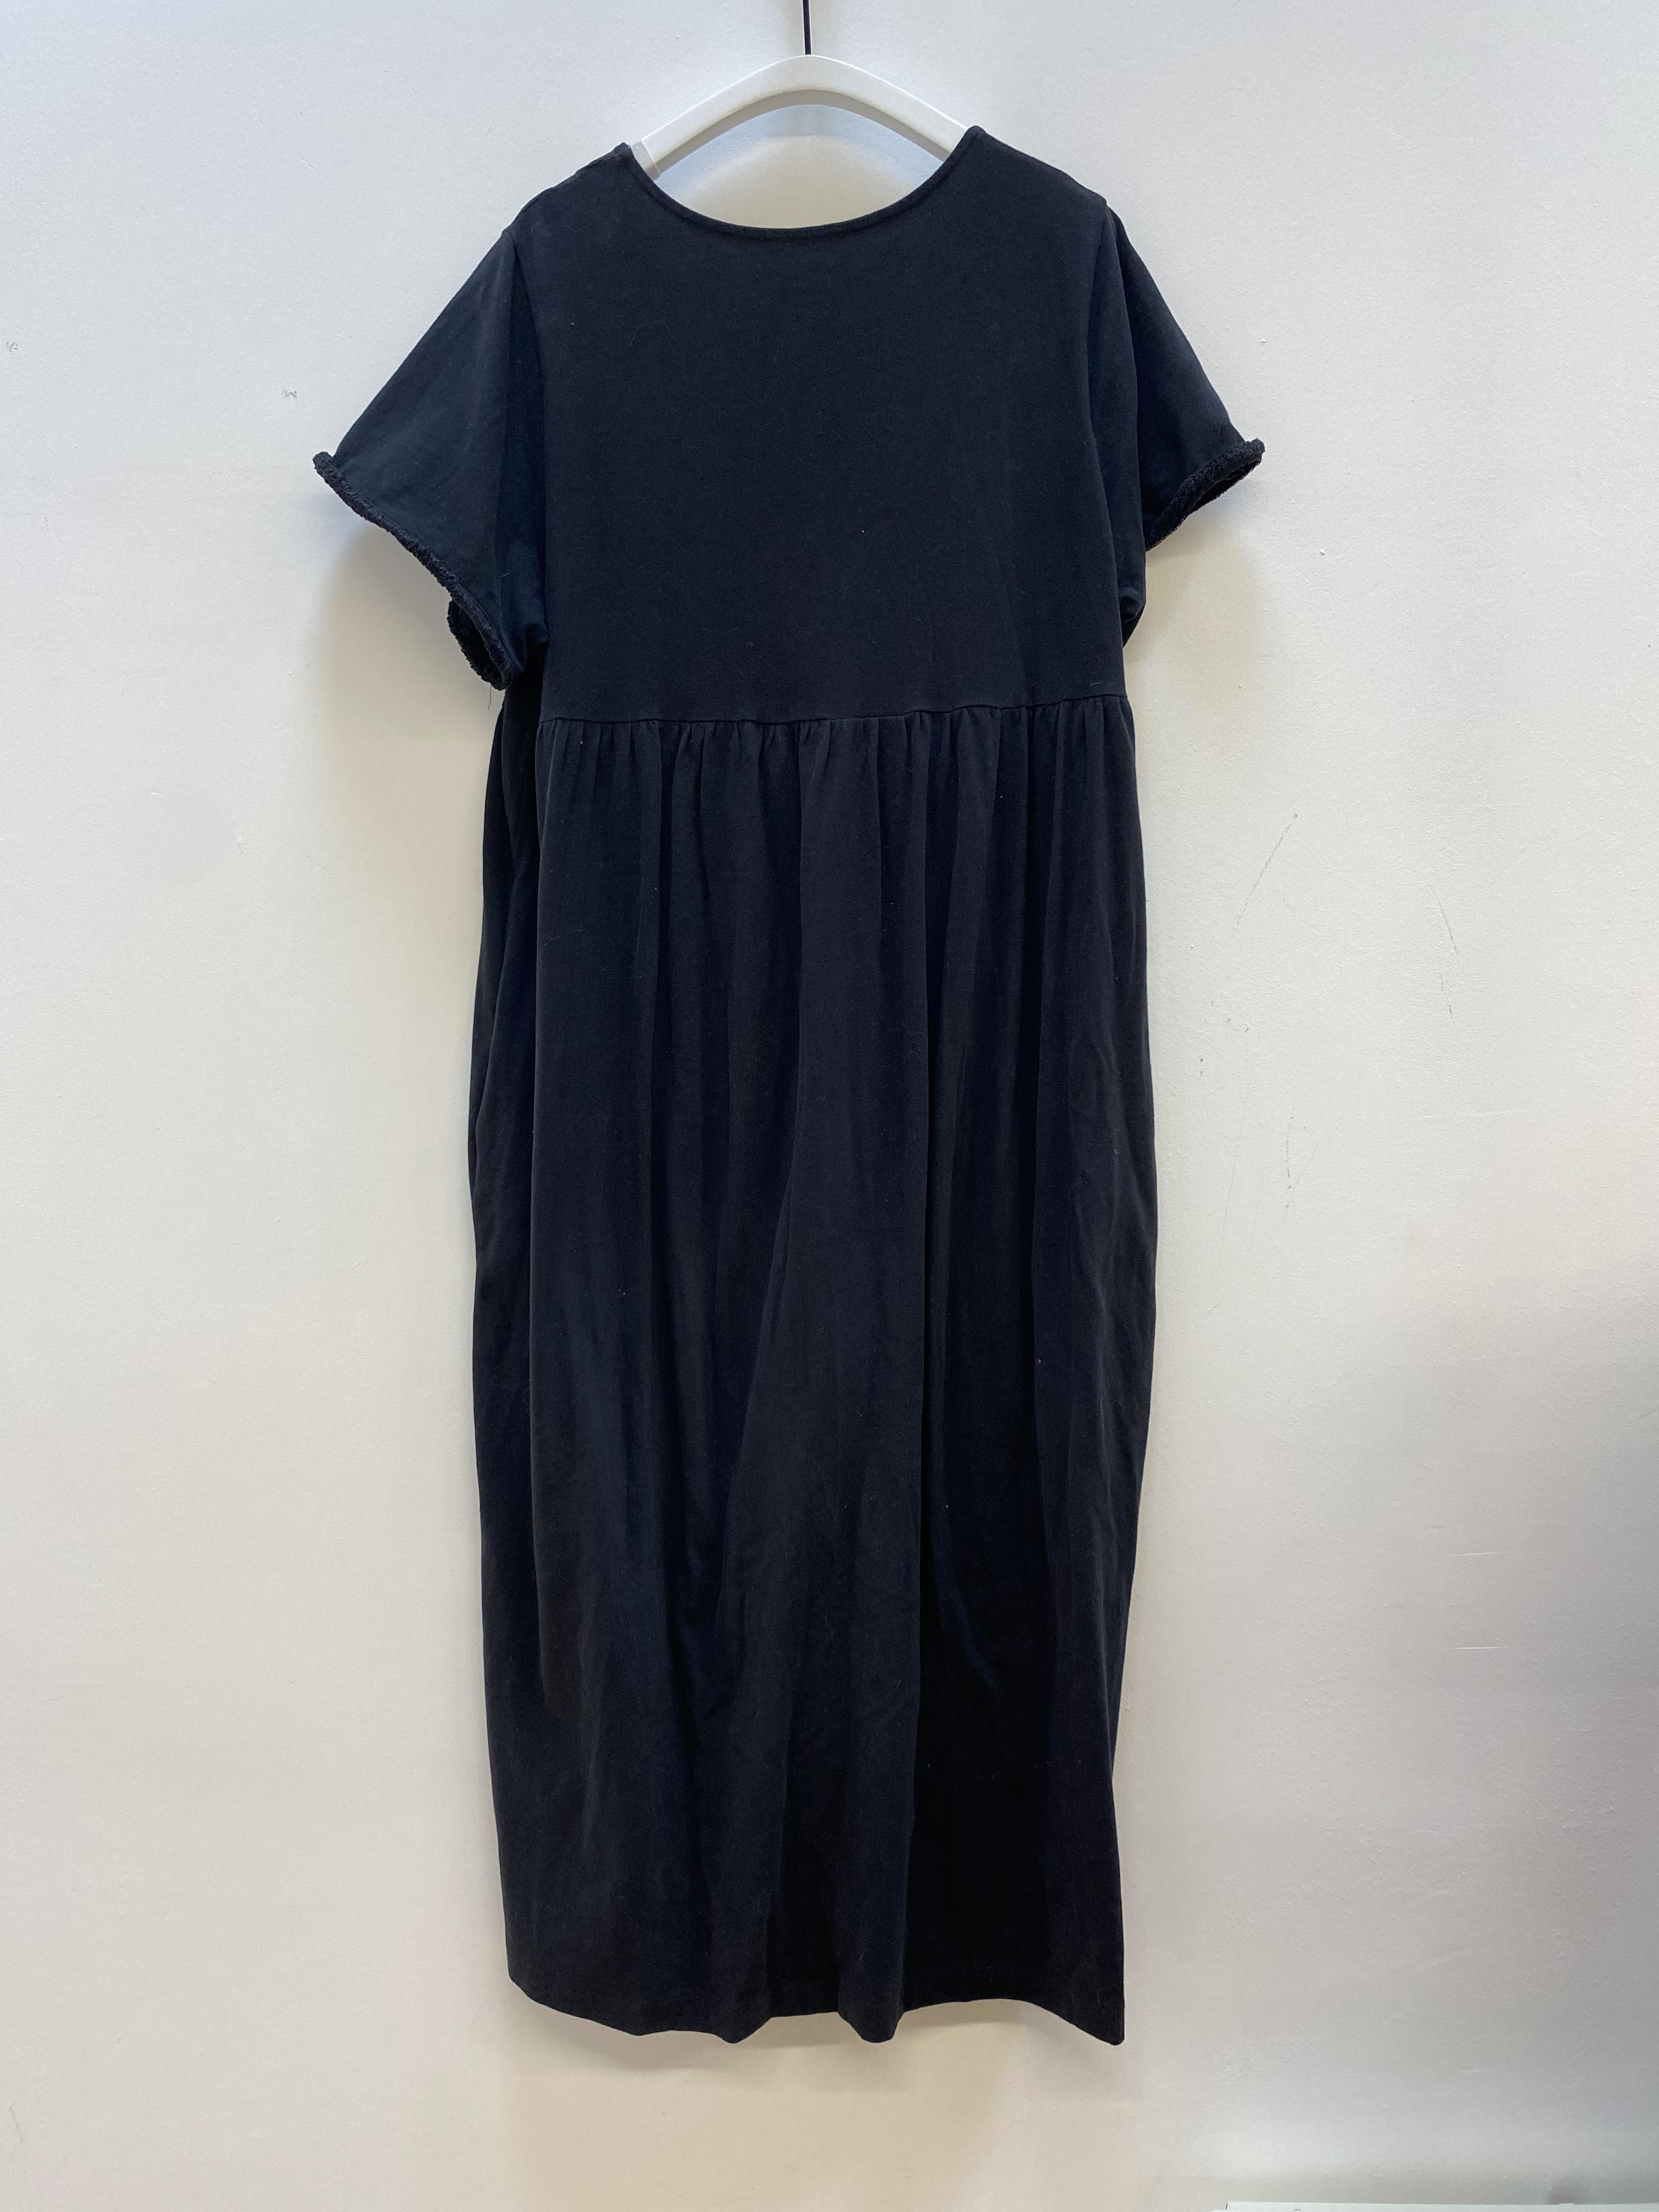 Momo Dress in Black Size S